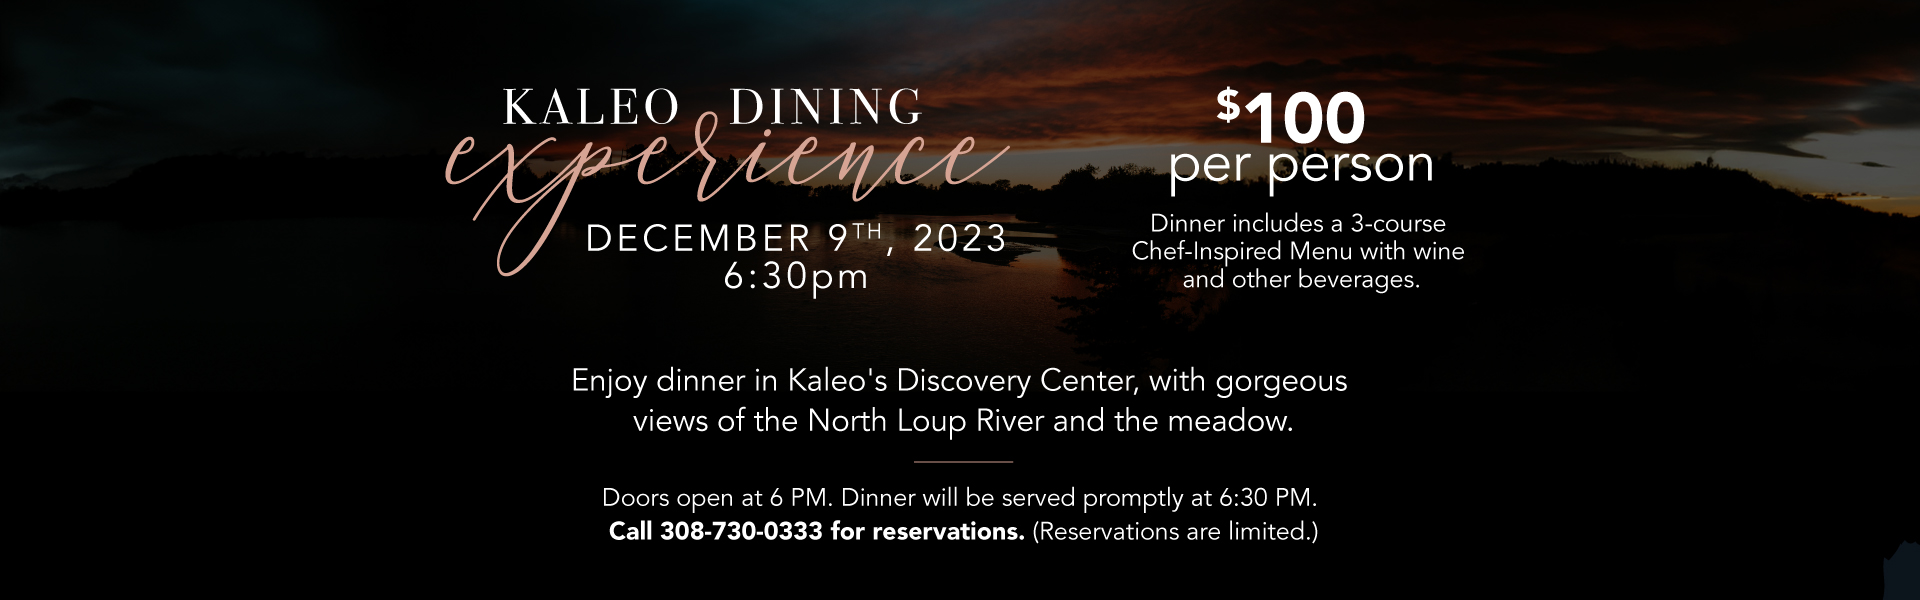 Kaleo Dining Experience